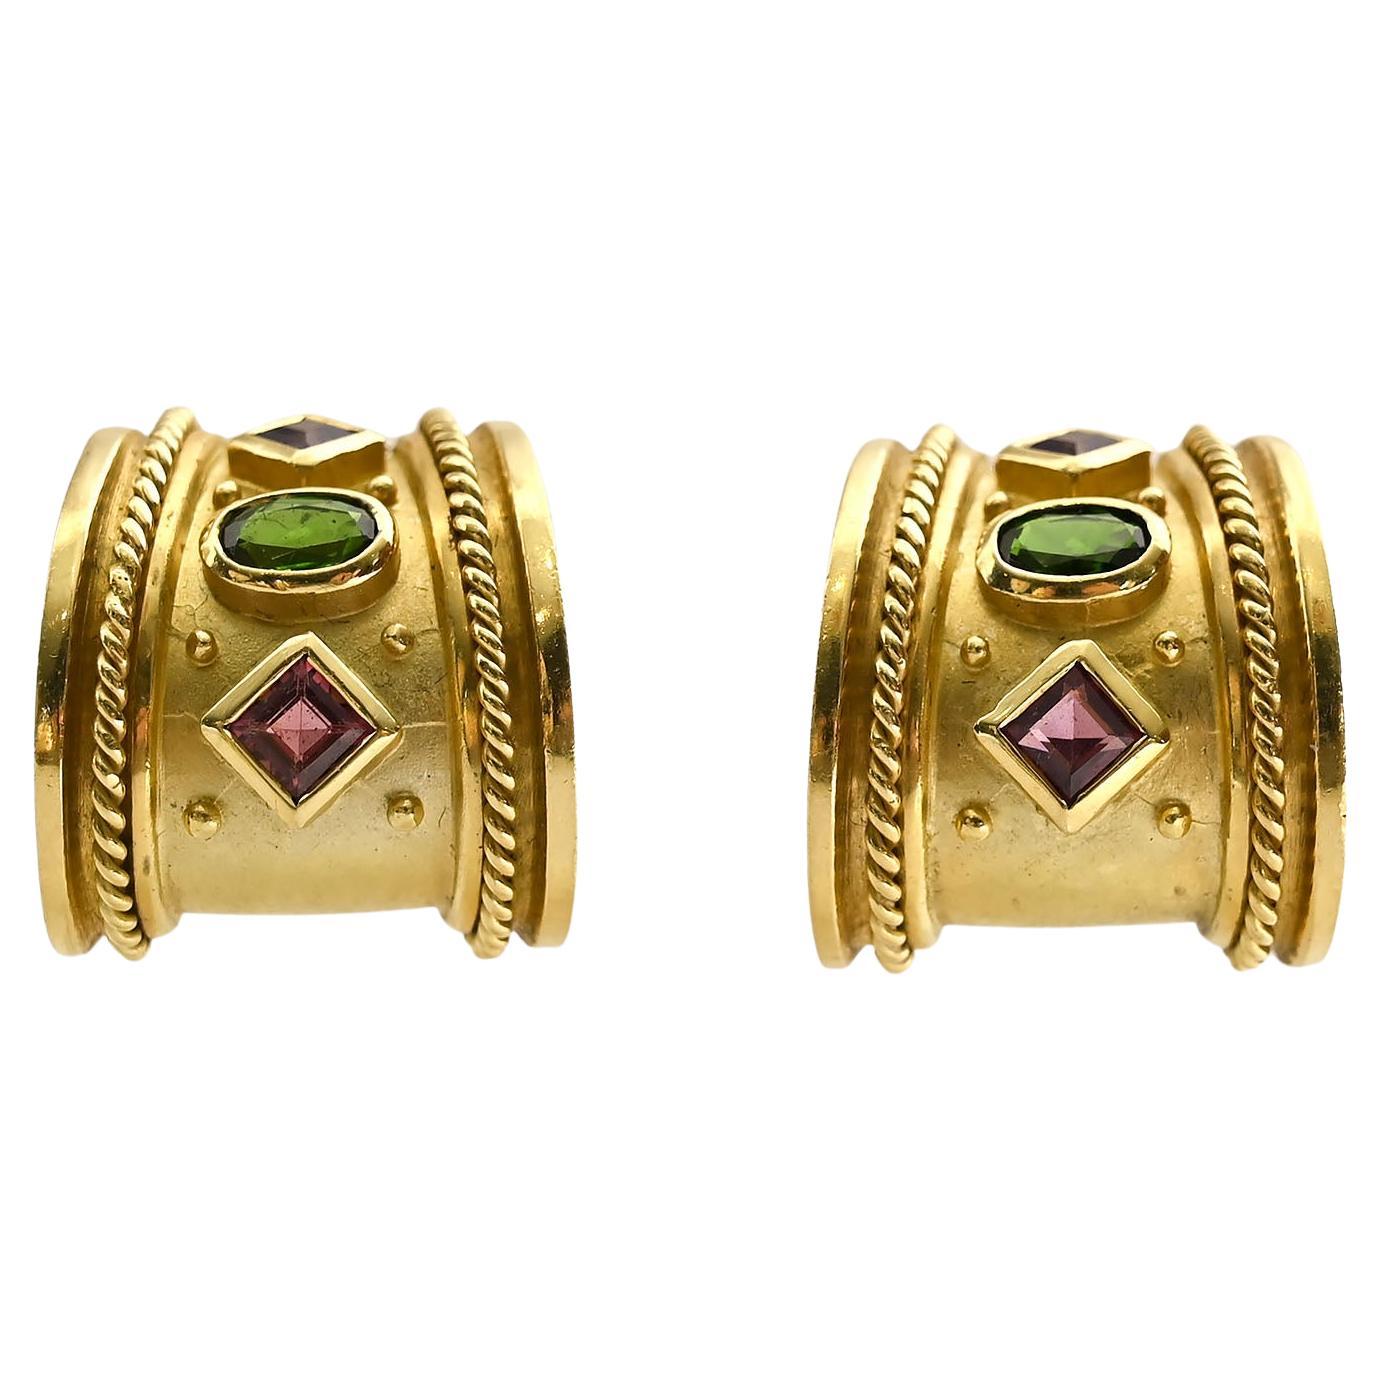 Seidengang Gold Earrings with Gemstones